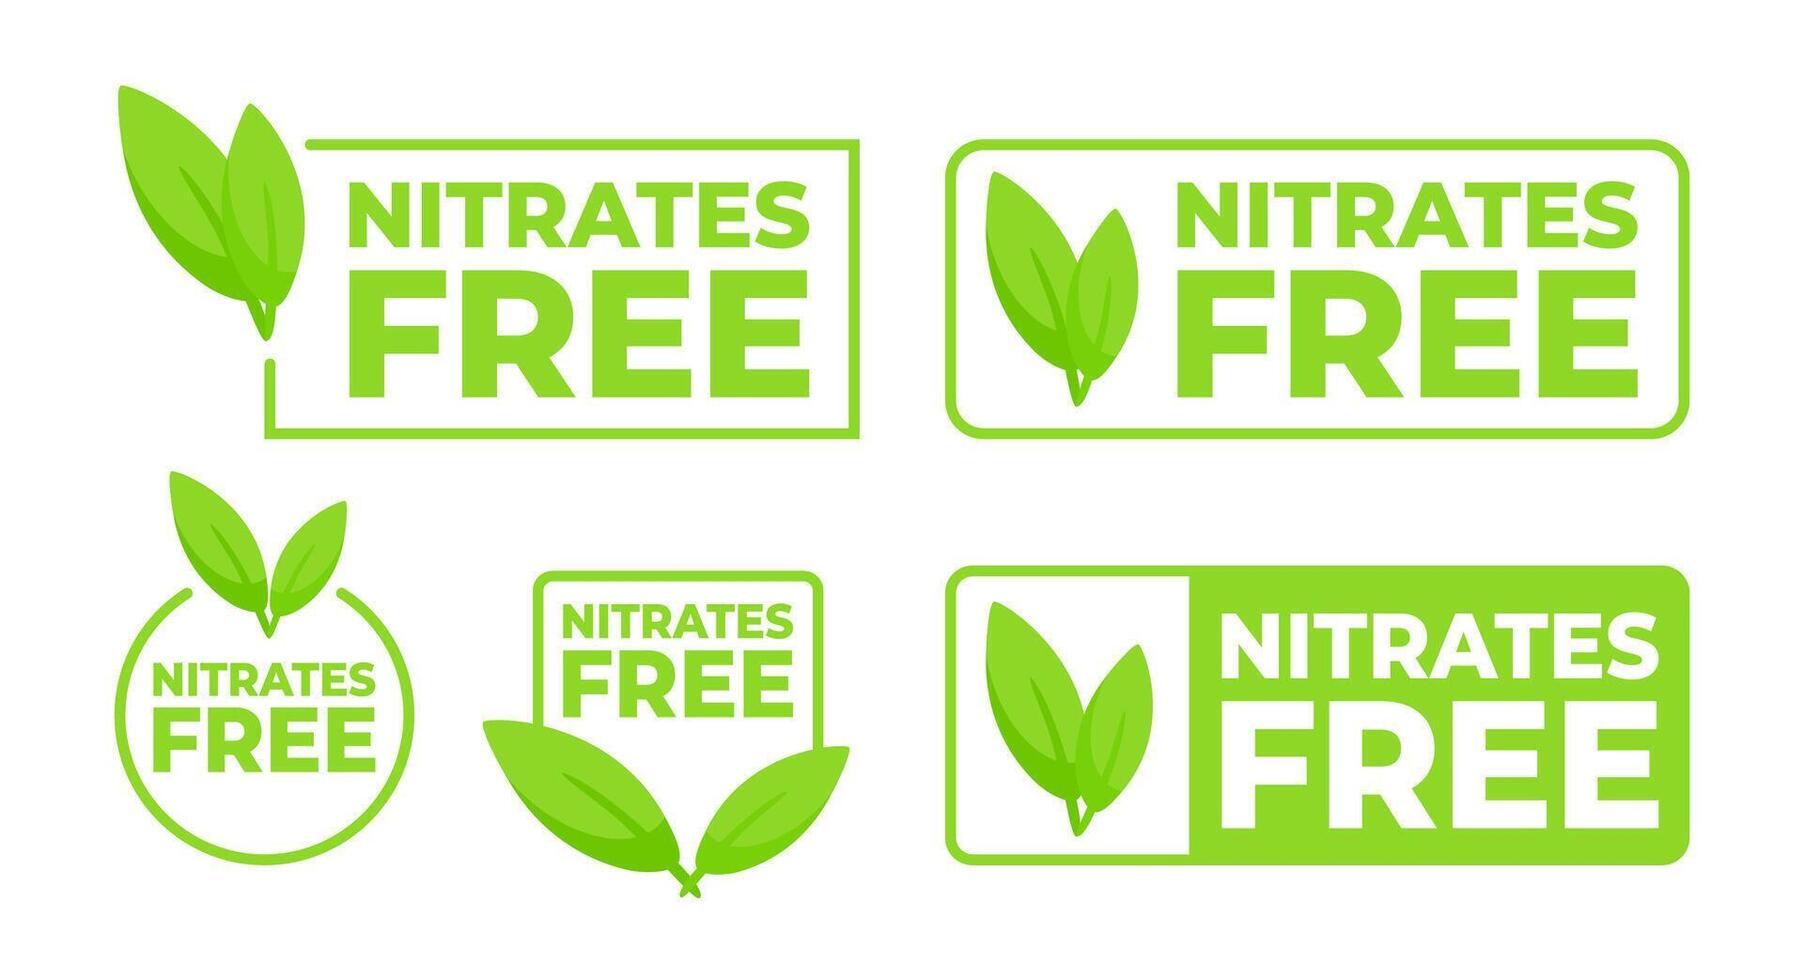 reeks van groen etiketten met een blad ontwerp, prominent weergeven nitraten vrij voor Gezondheid gefocust voedsel en Product verpakking. vector